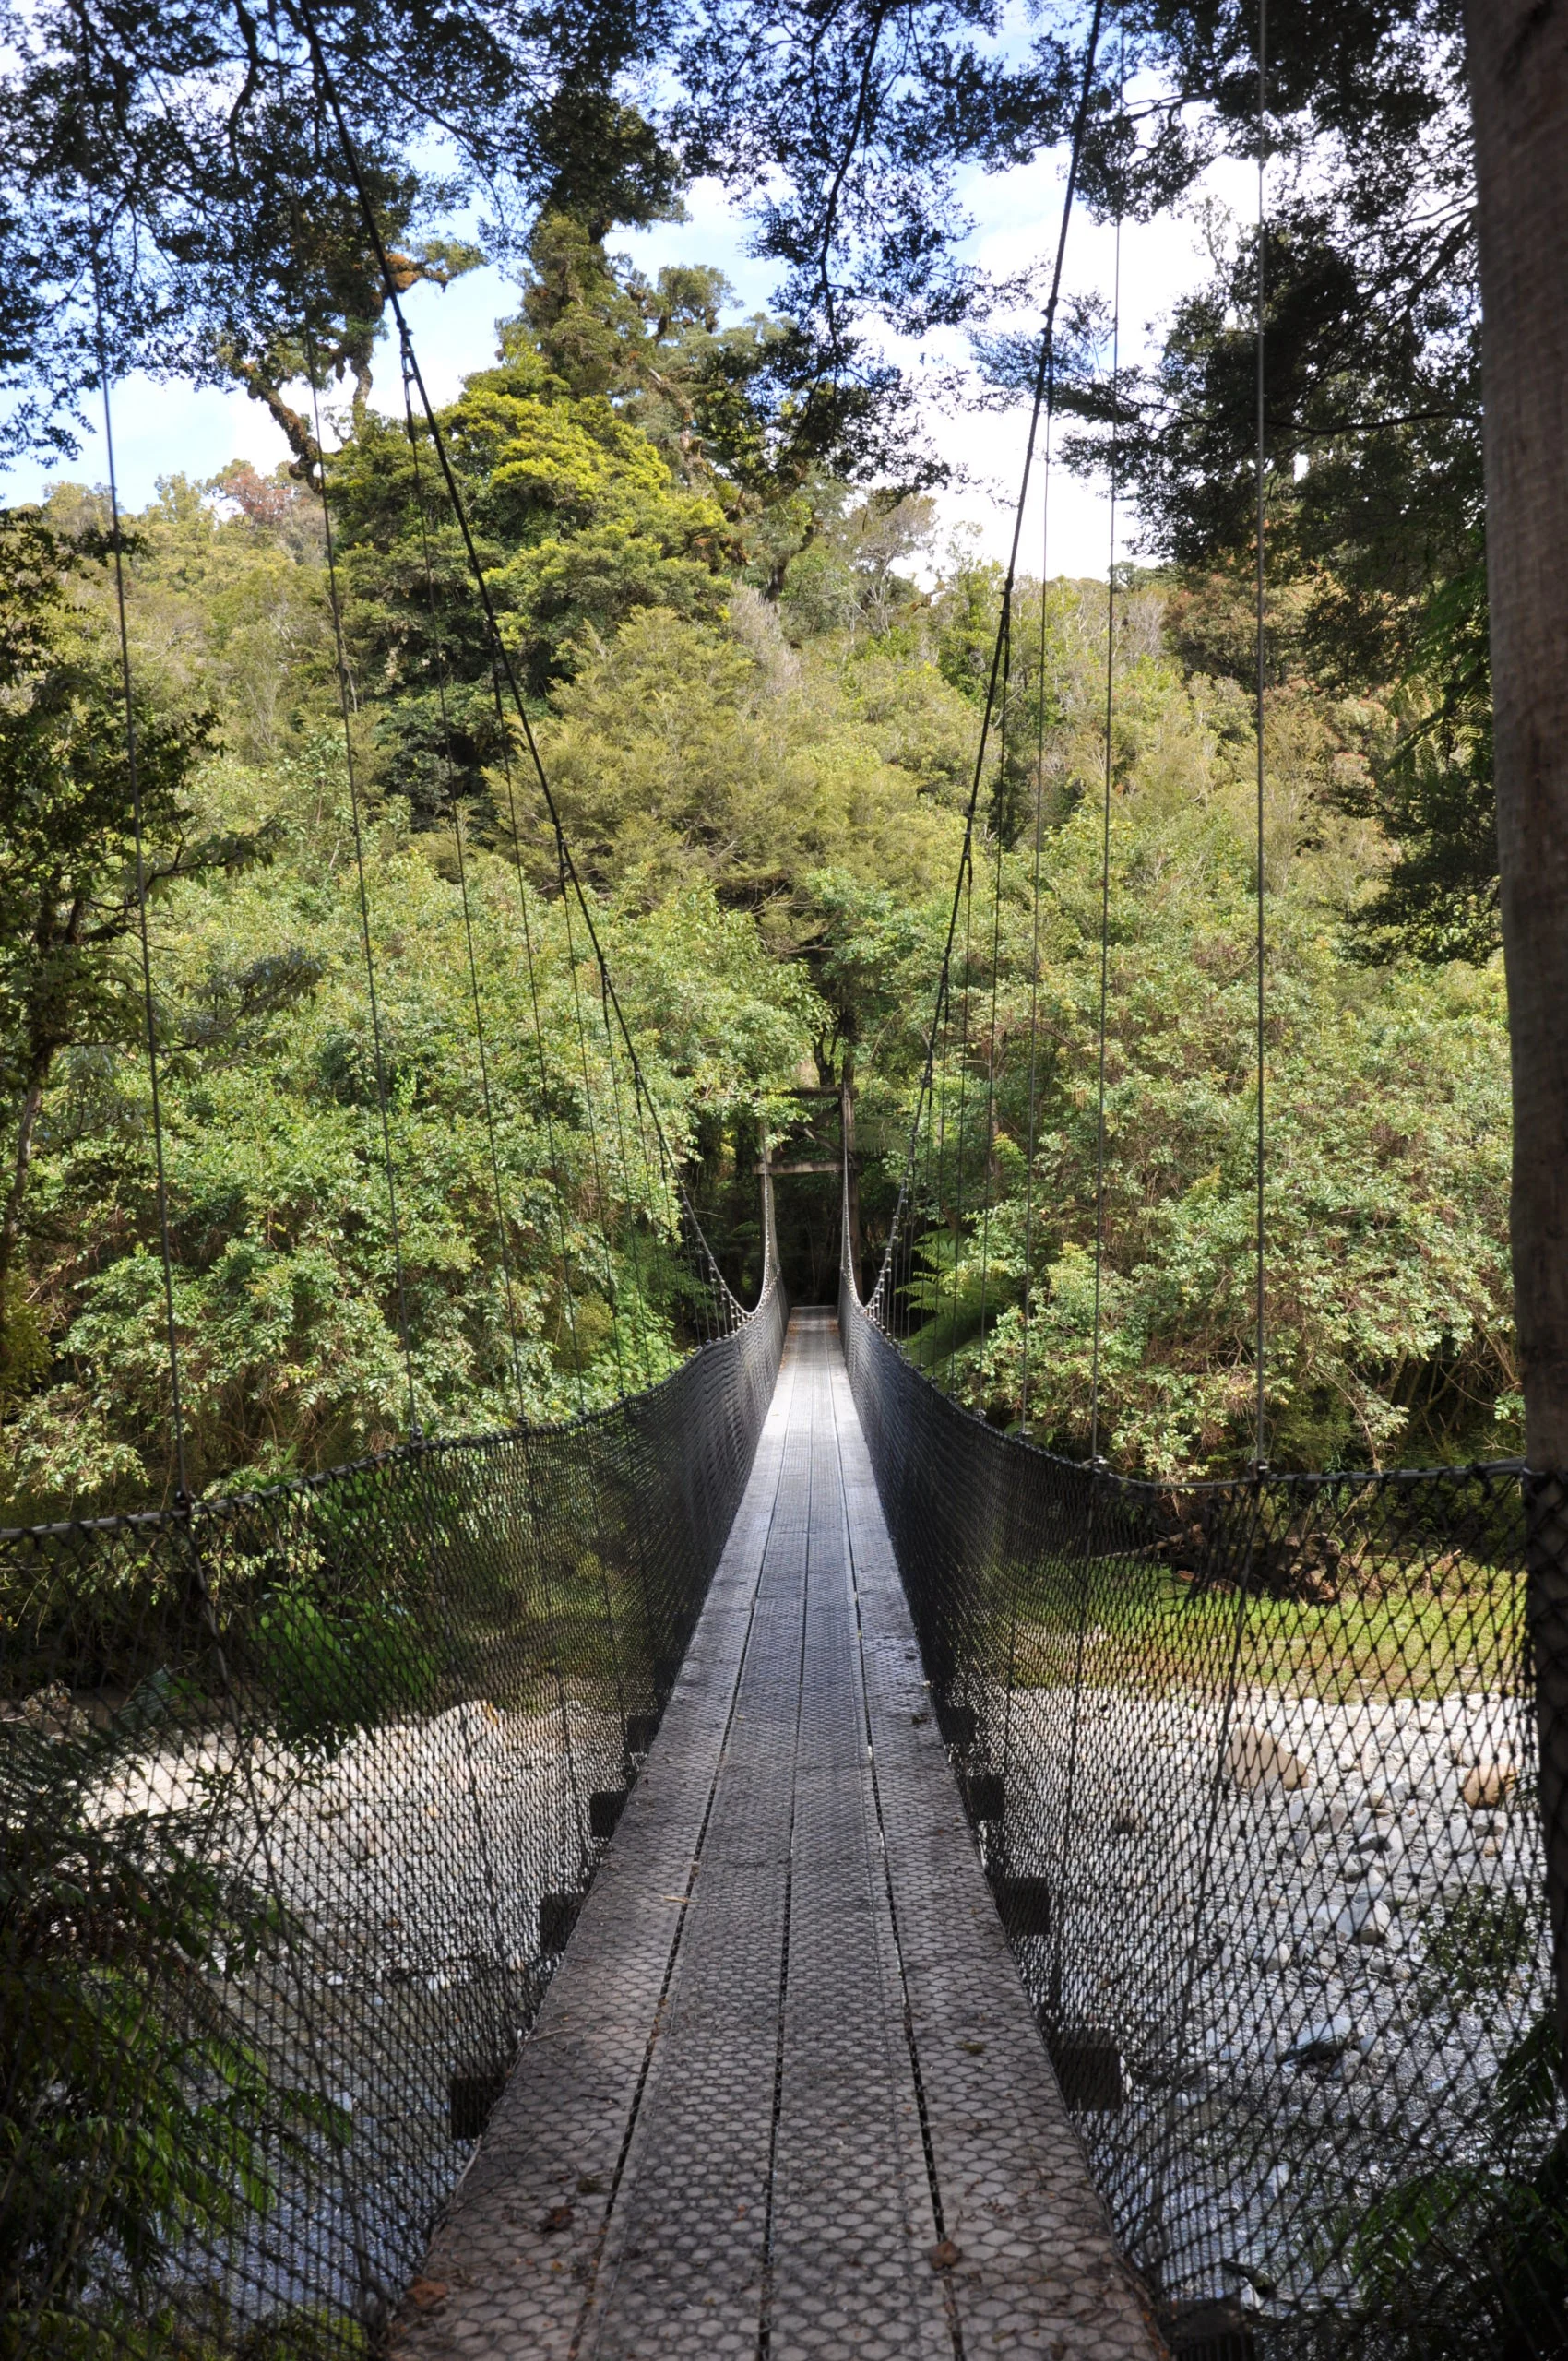 Hängebrücke in grüner Umgebung, verbindet Wege und umarmt die Schönheit der Natur.